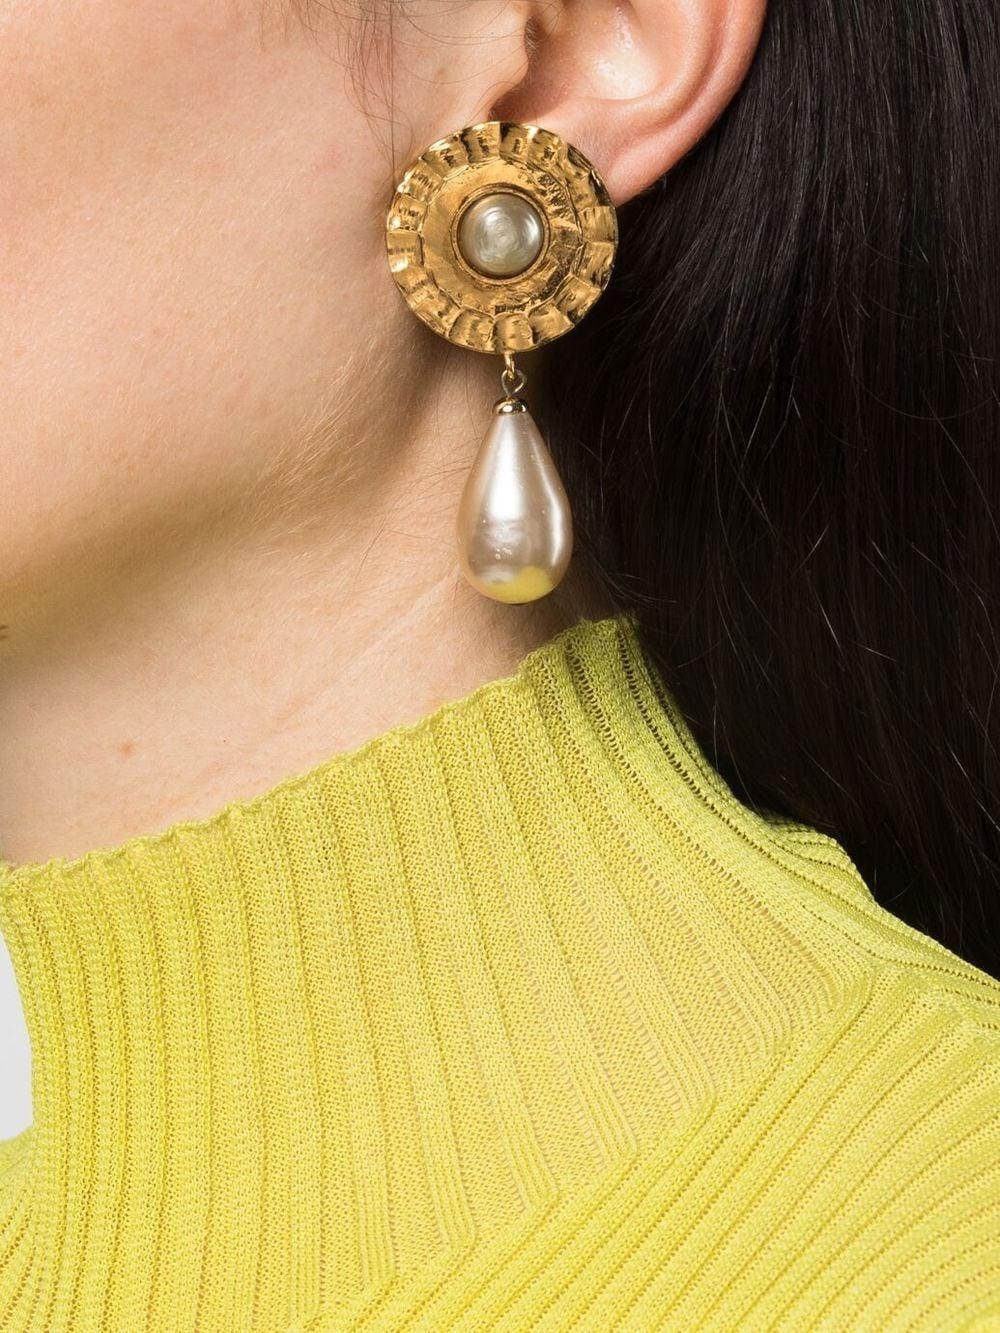 back of chanel earrings